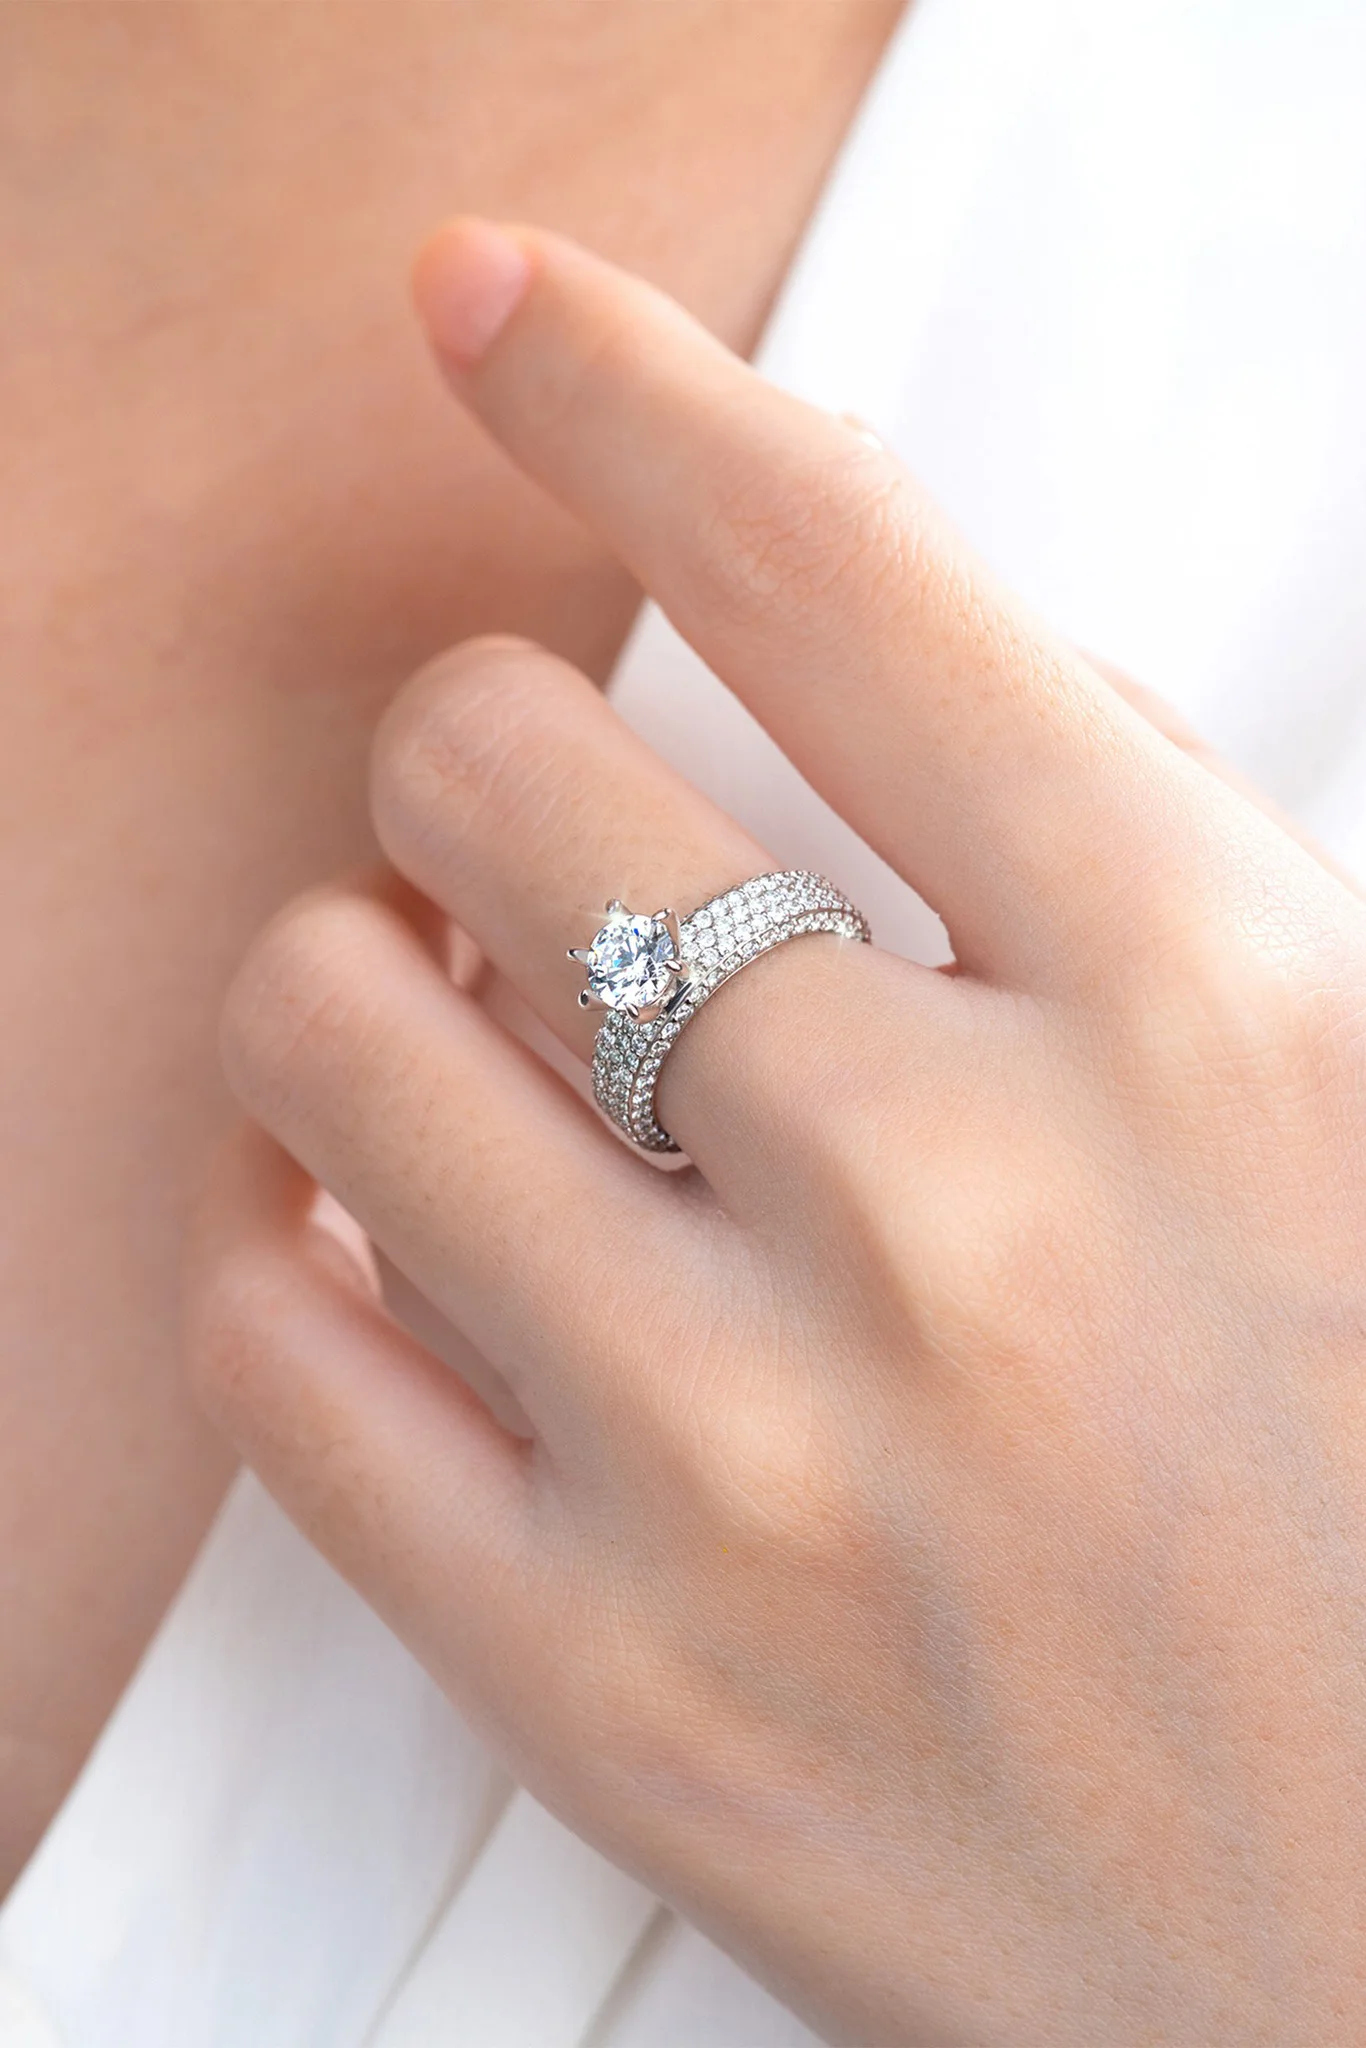 Vỏ nhẫn kim cương là gì? Vỏ nhẫn kim cương có những loại nào?